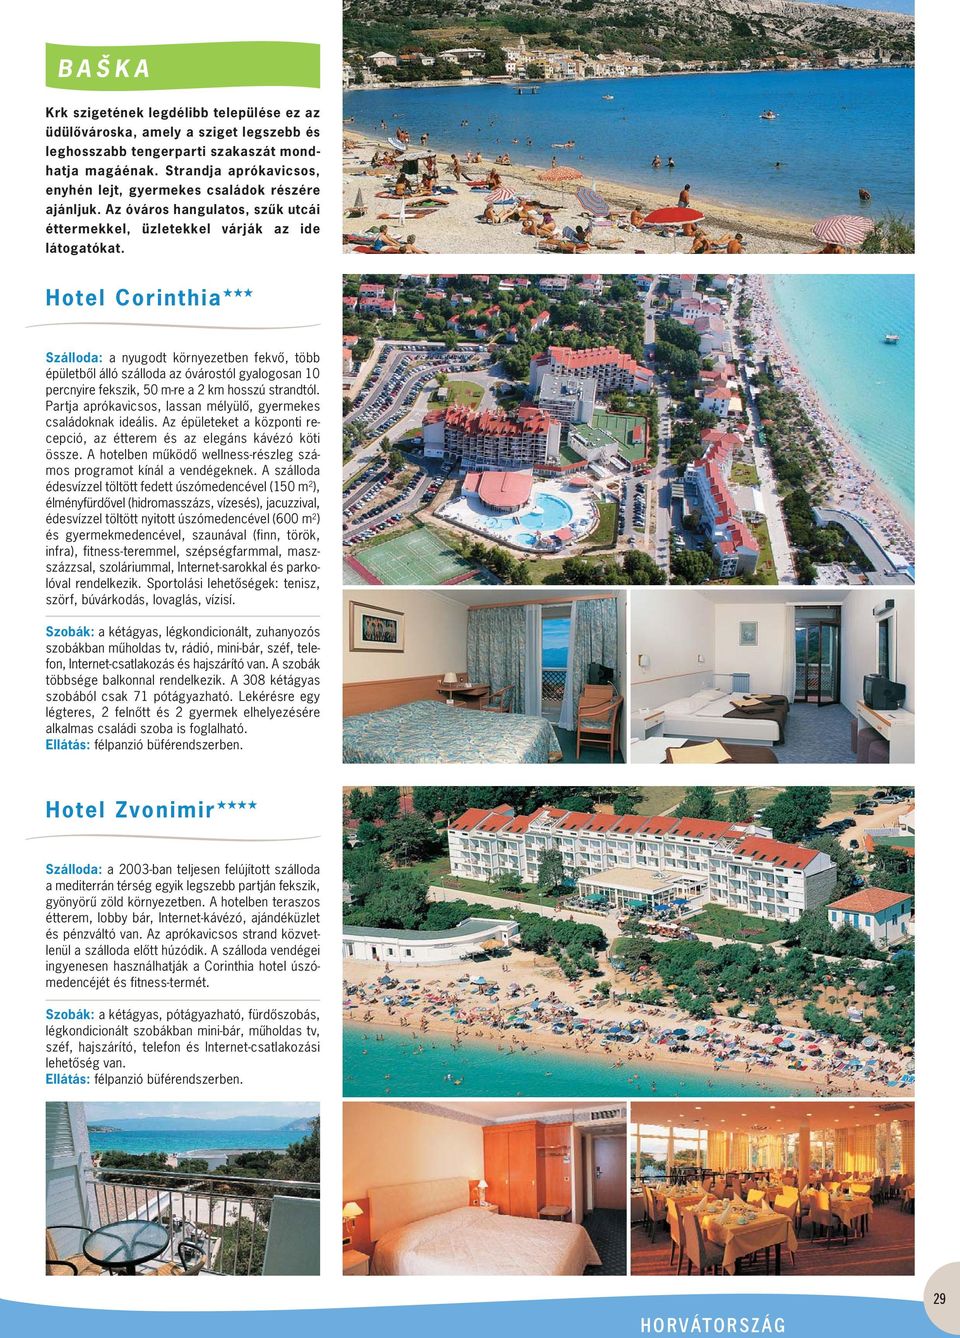 Hotel Corinthia Szálloda: a nyugodt környezetben fekvô, több épületbôl álló szálloda az óvárostól gyalogosan 10 perc nyire fekszik, 50 m-re a 2 km hosszú strandtól.